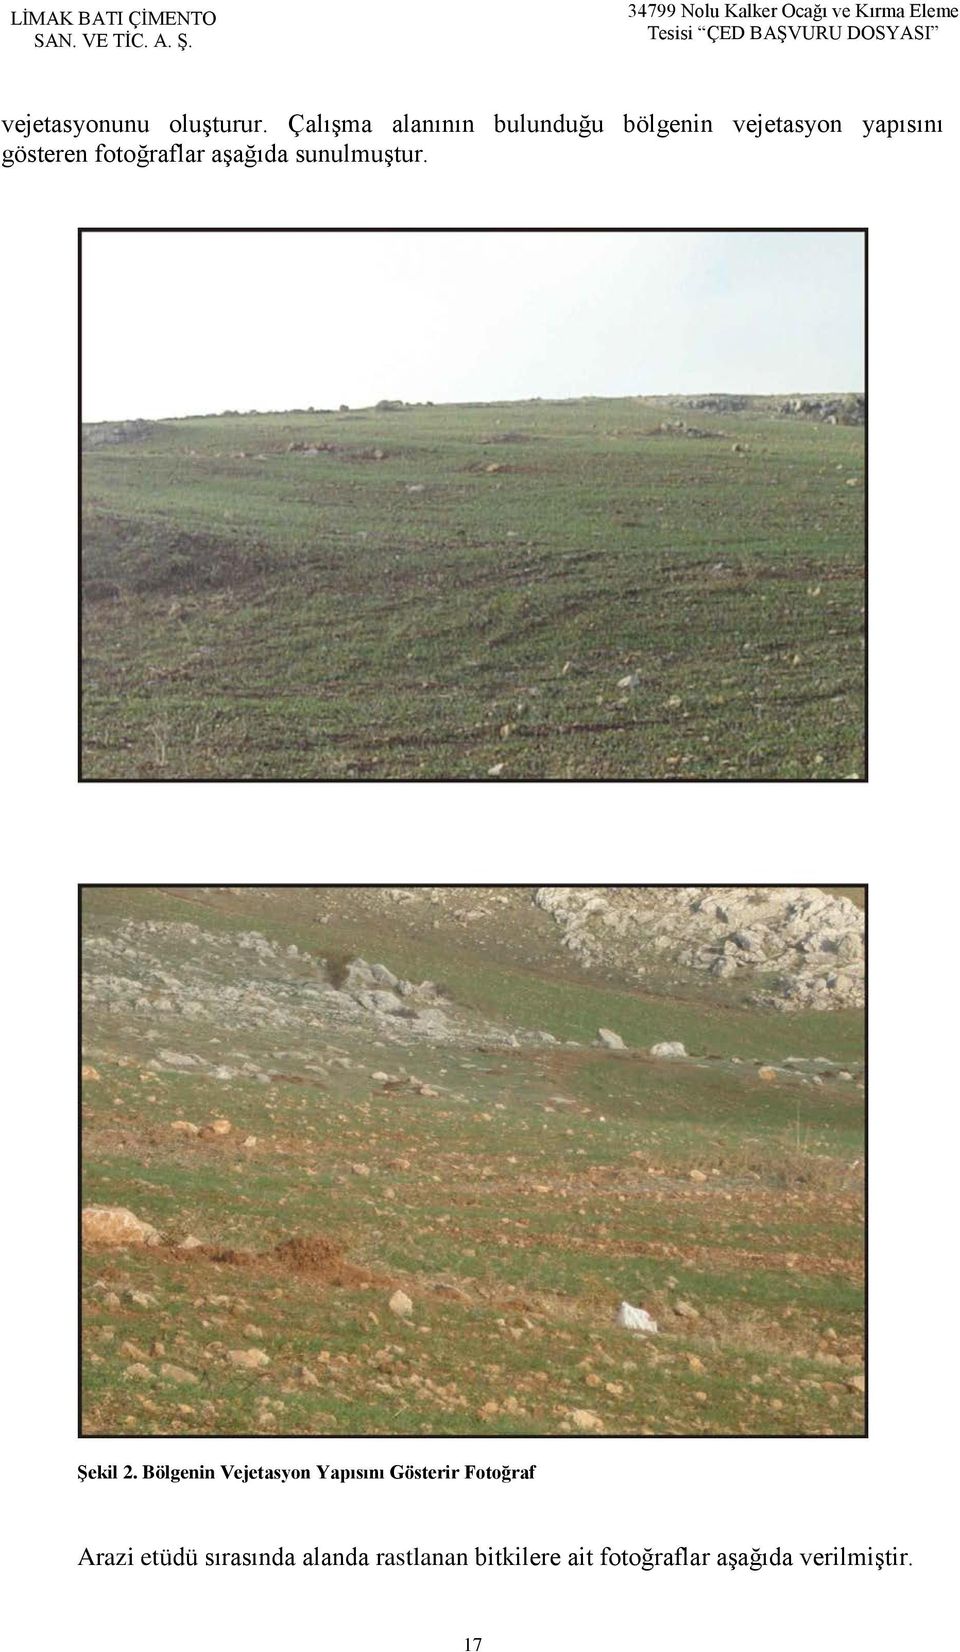 Çalışma alanının bulunduğu bölgenin vejetasyon yapısını gösteren fotoğraflar